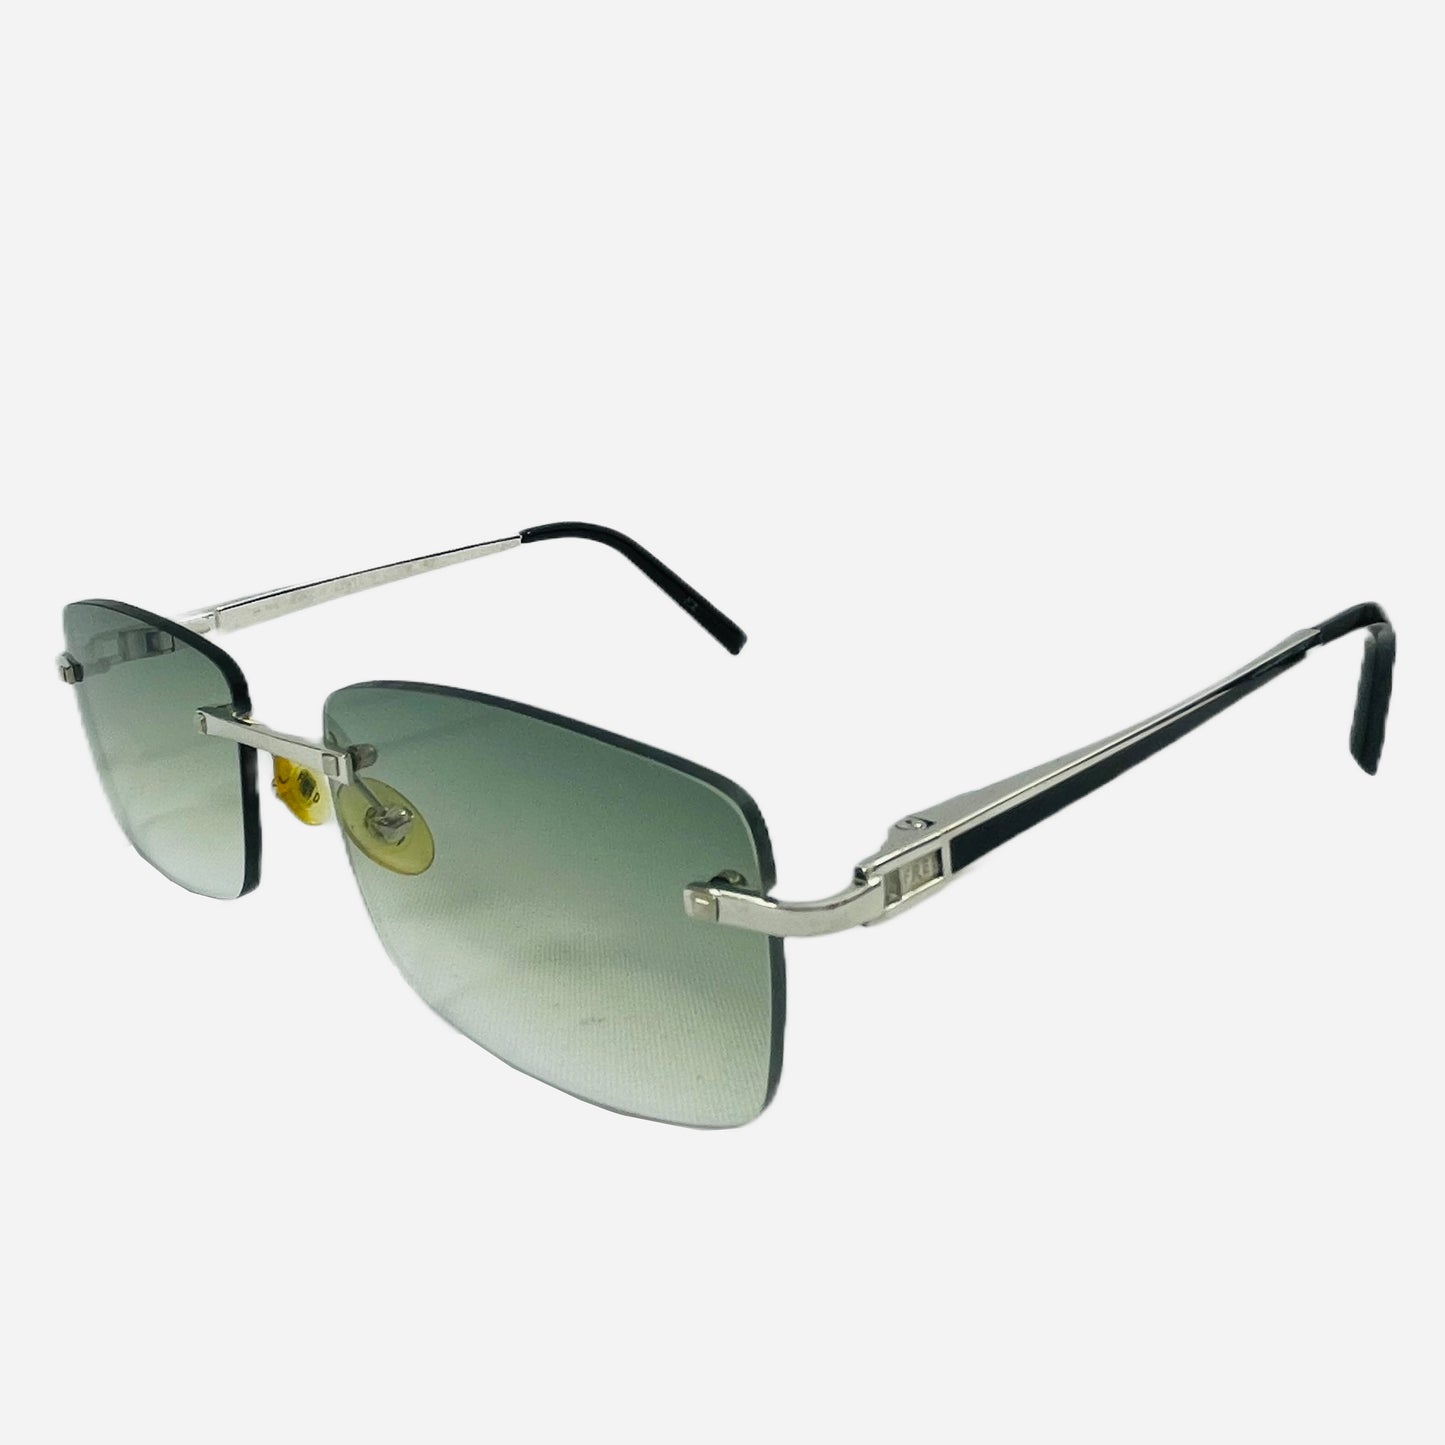 Fred-Paris-Sonnenbrille-Sunglasses-Jamaique-rimless-rahmenlose-Sonnenbrille-the-seekers-front-side